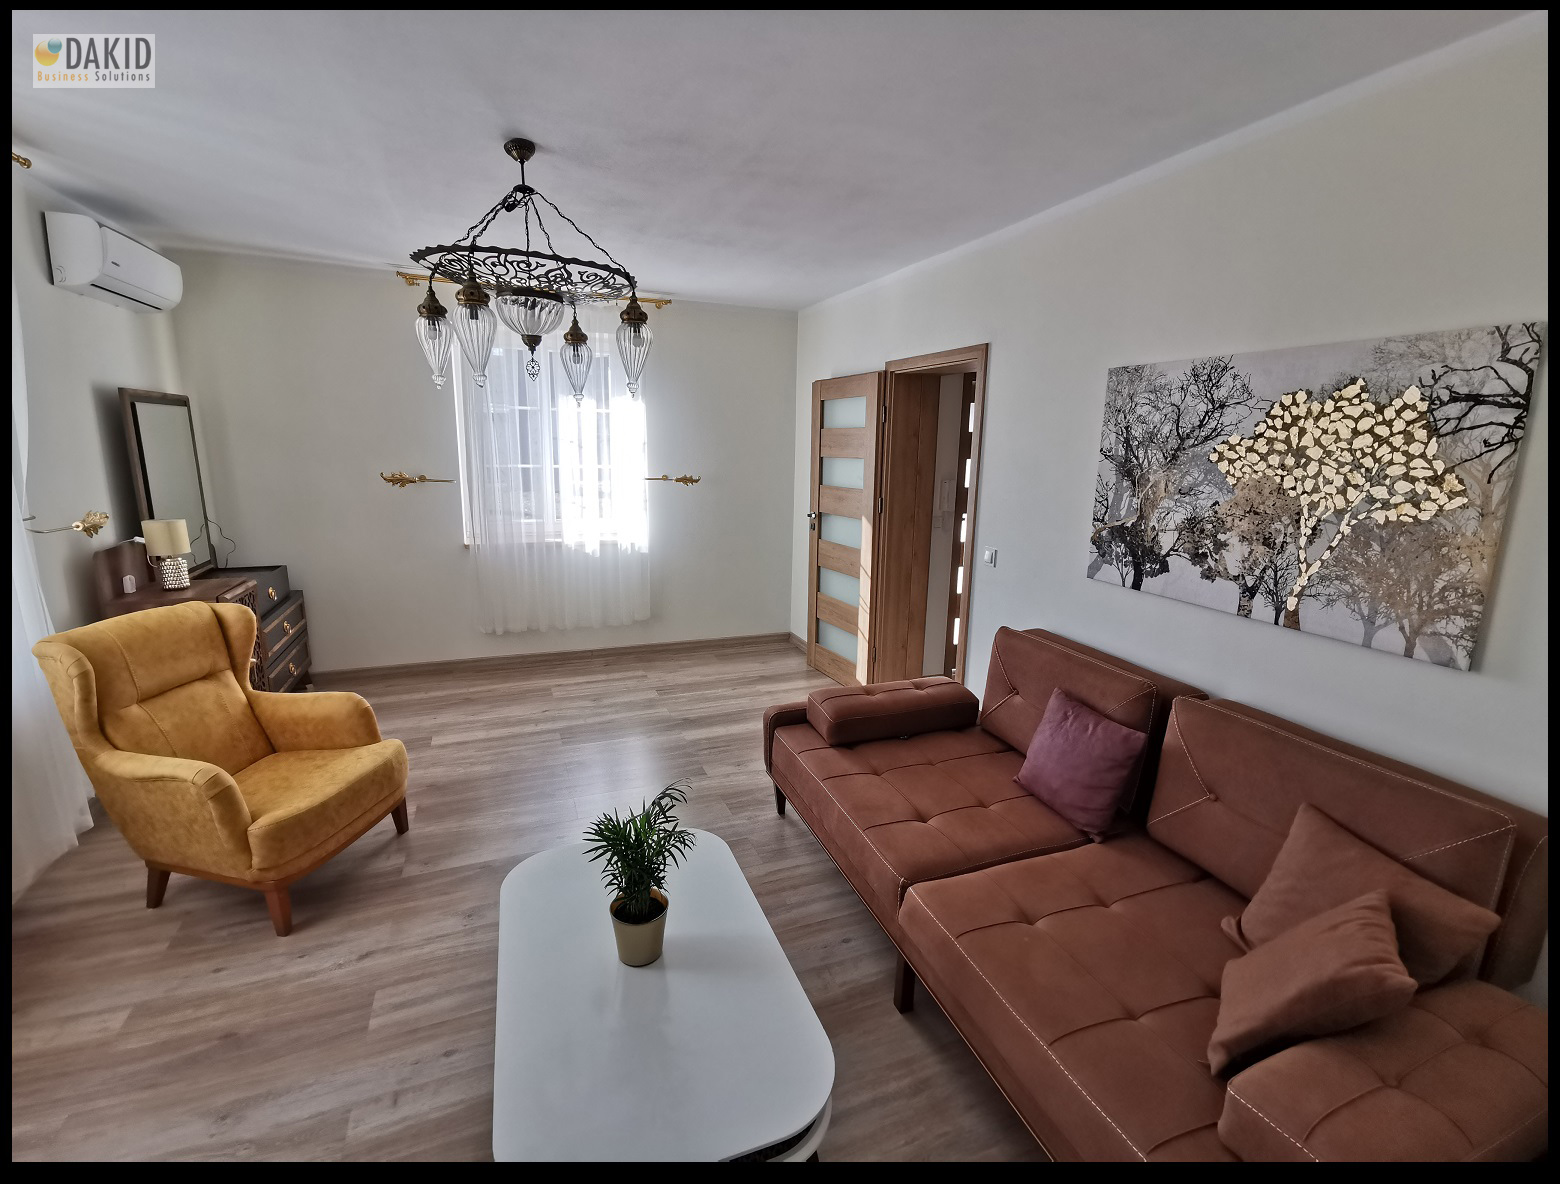 salon - mieszkanie w stylu tureckim